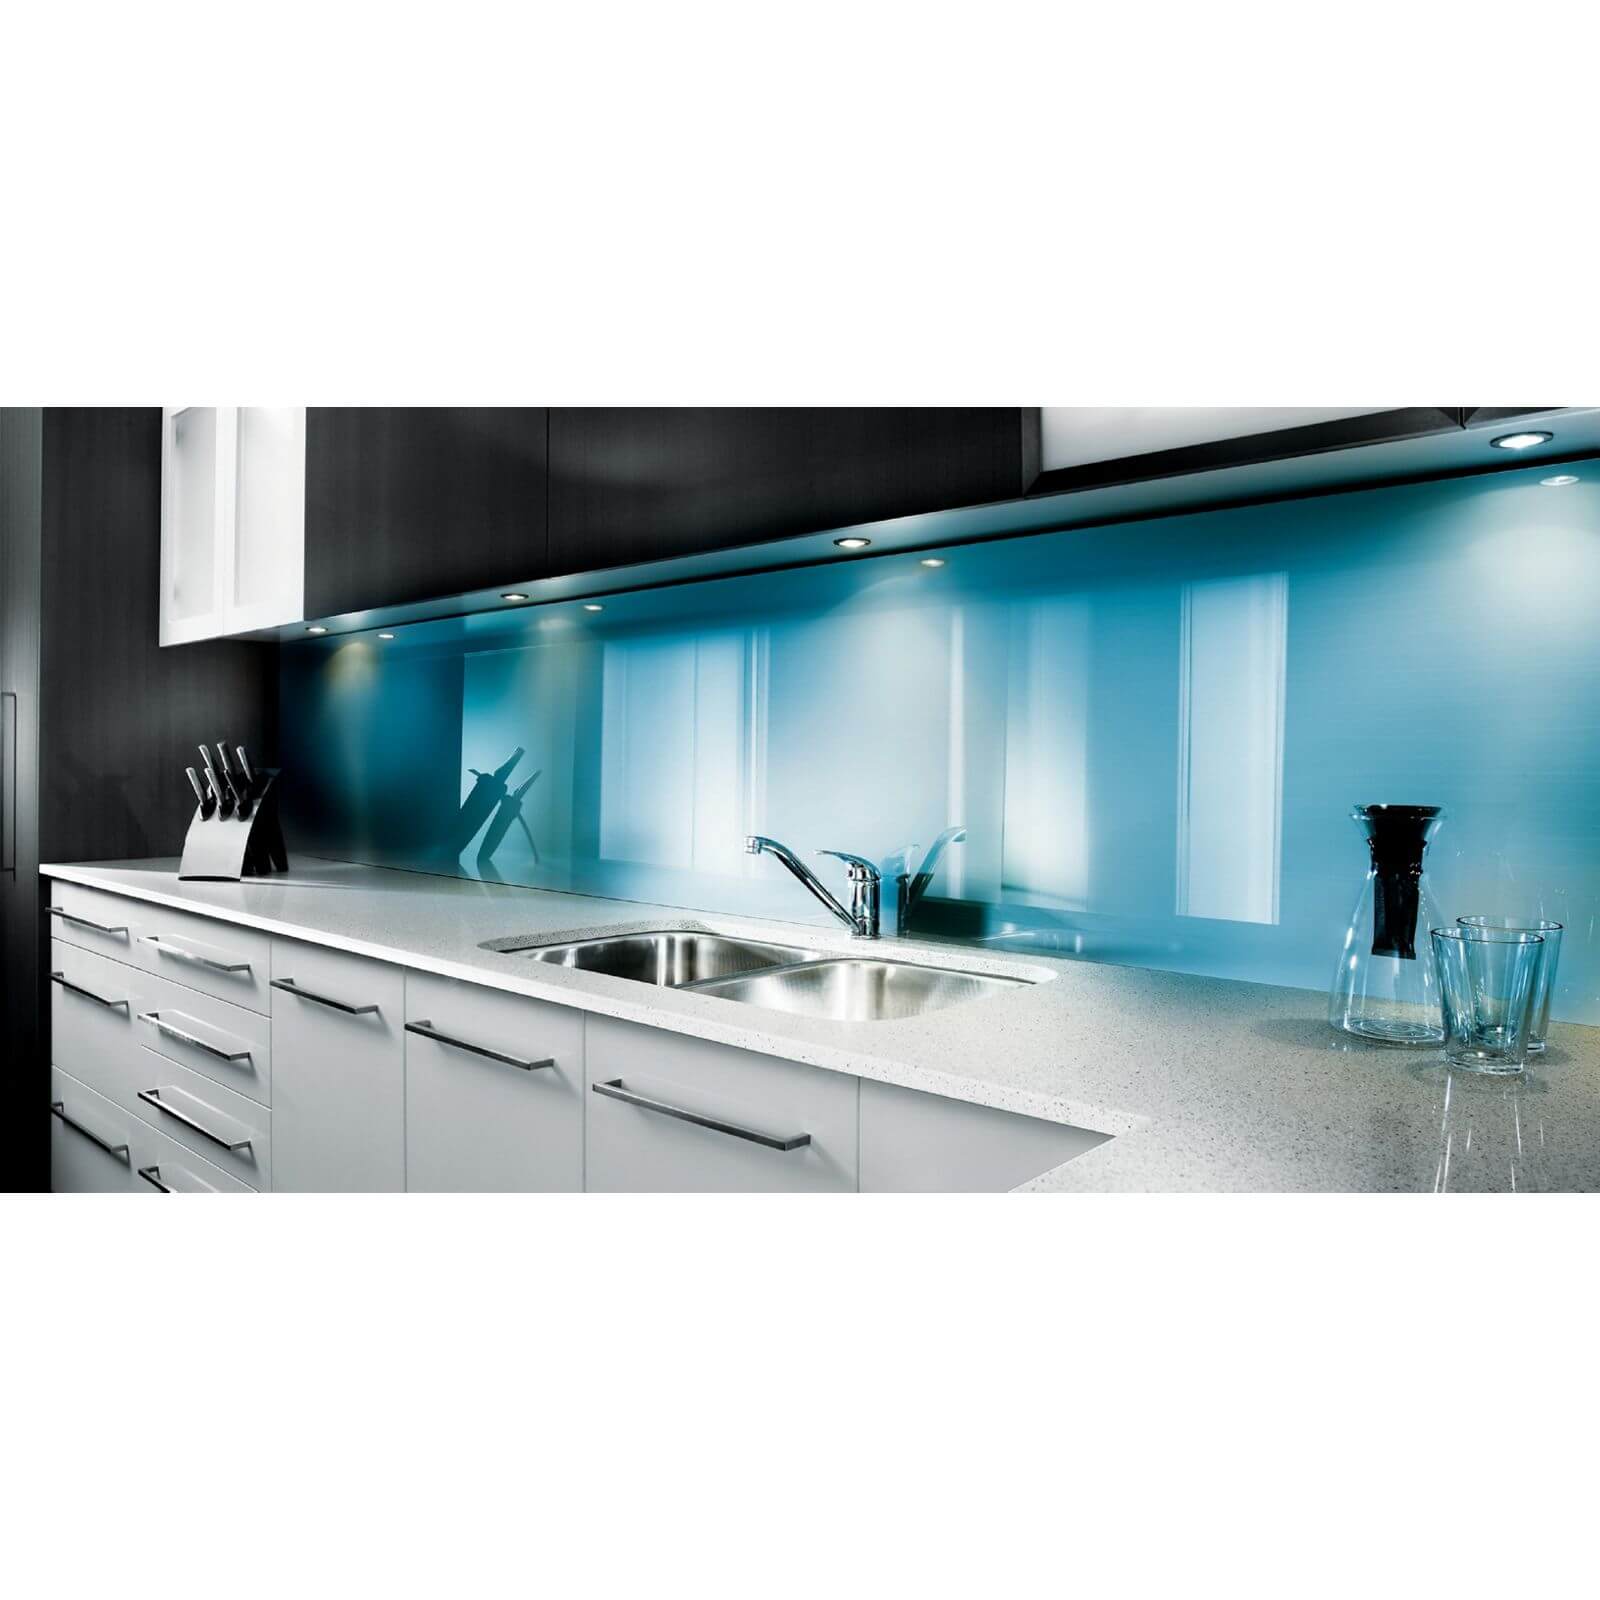 Zenolite Acrylic Kitchen Splashback Panel - 1220 x 1000 x 4mm - Blue Atoll